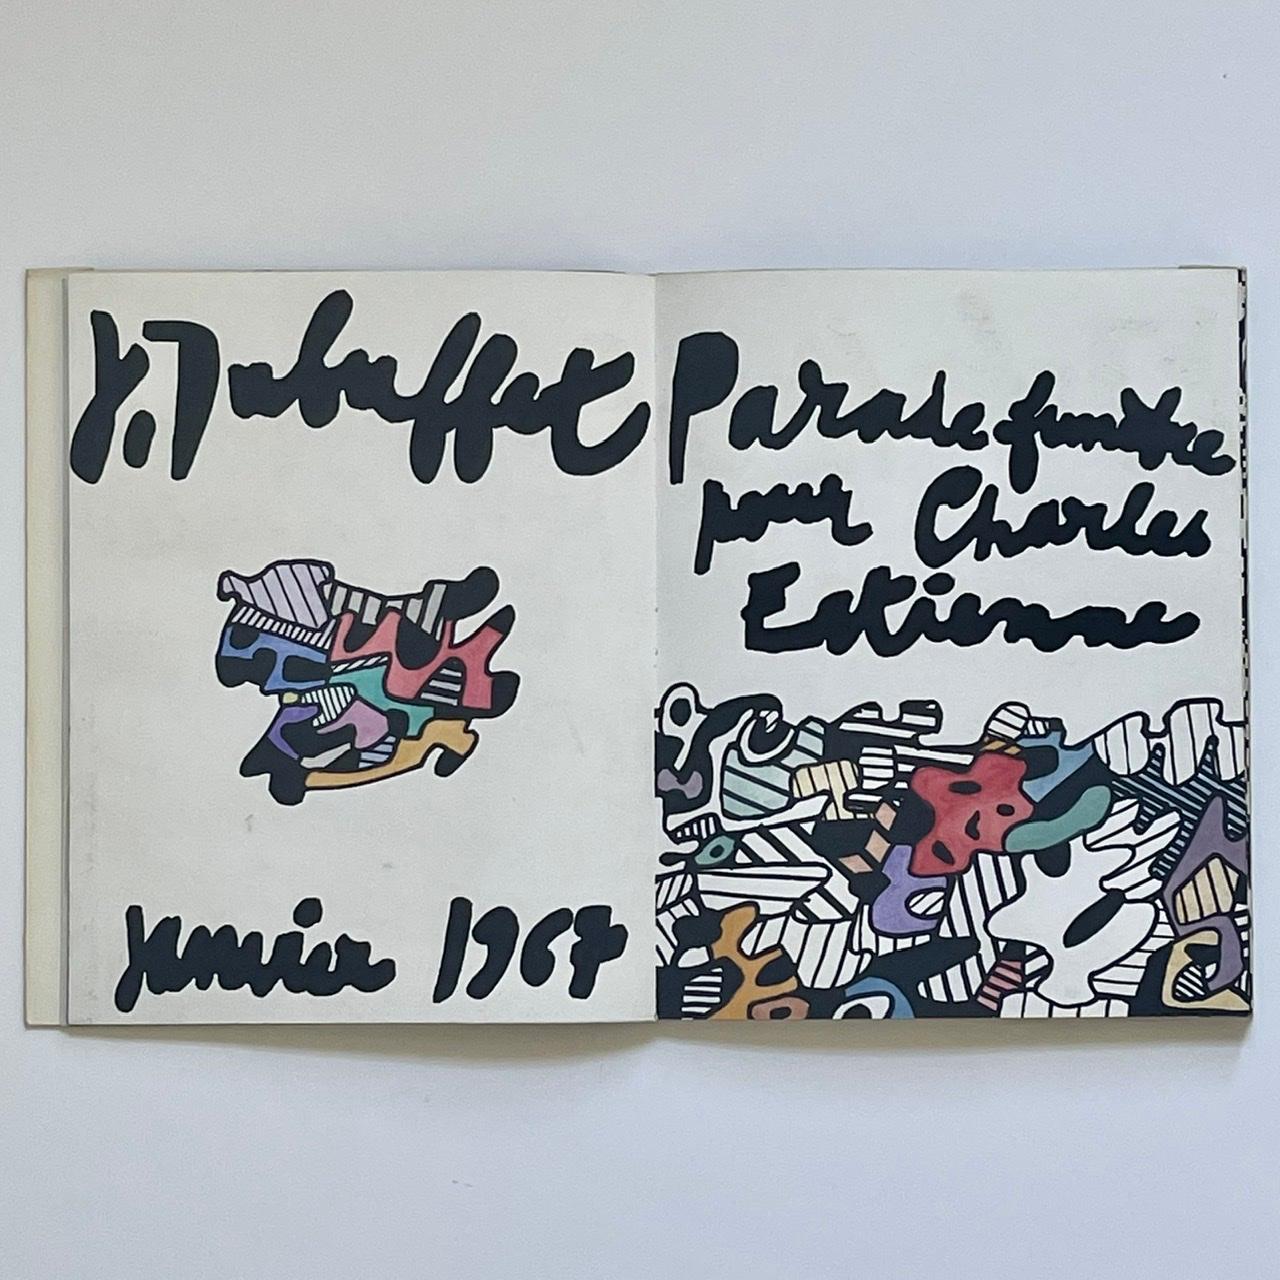 Jean Dubuffet, Parade Funebre Pour Charles Estienne, 1967 (Mitte des 20. Jahrhunderts)